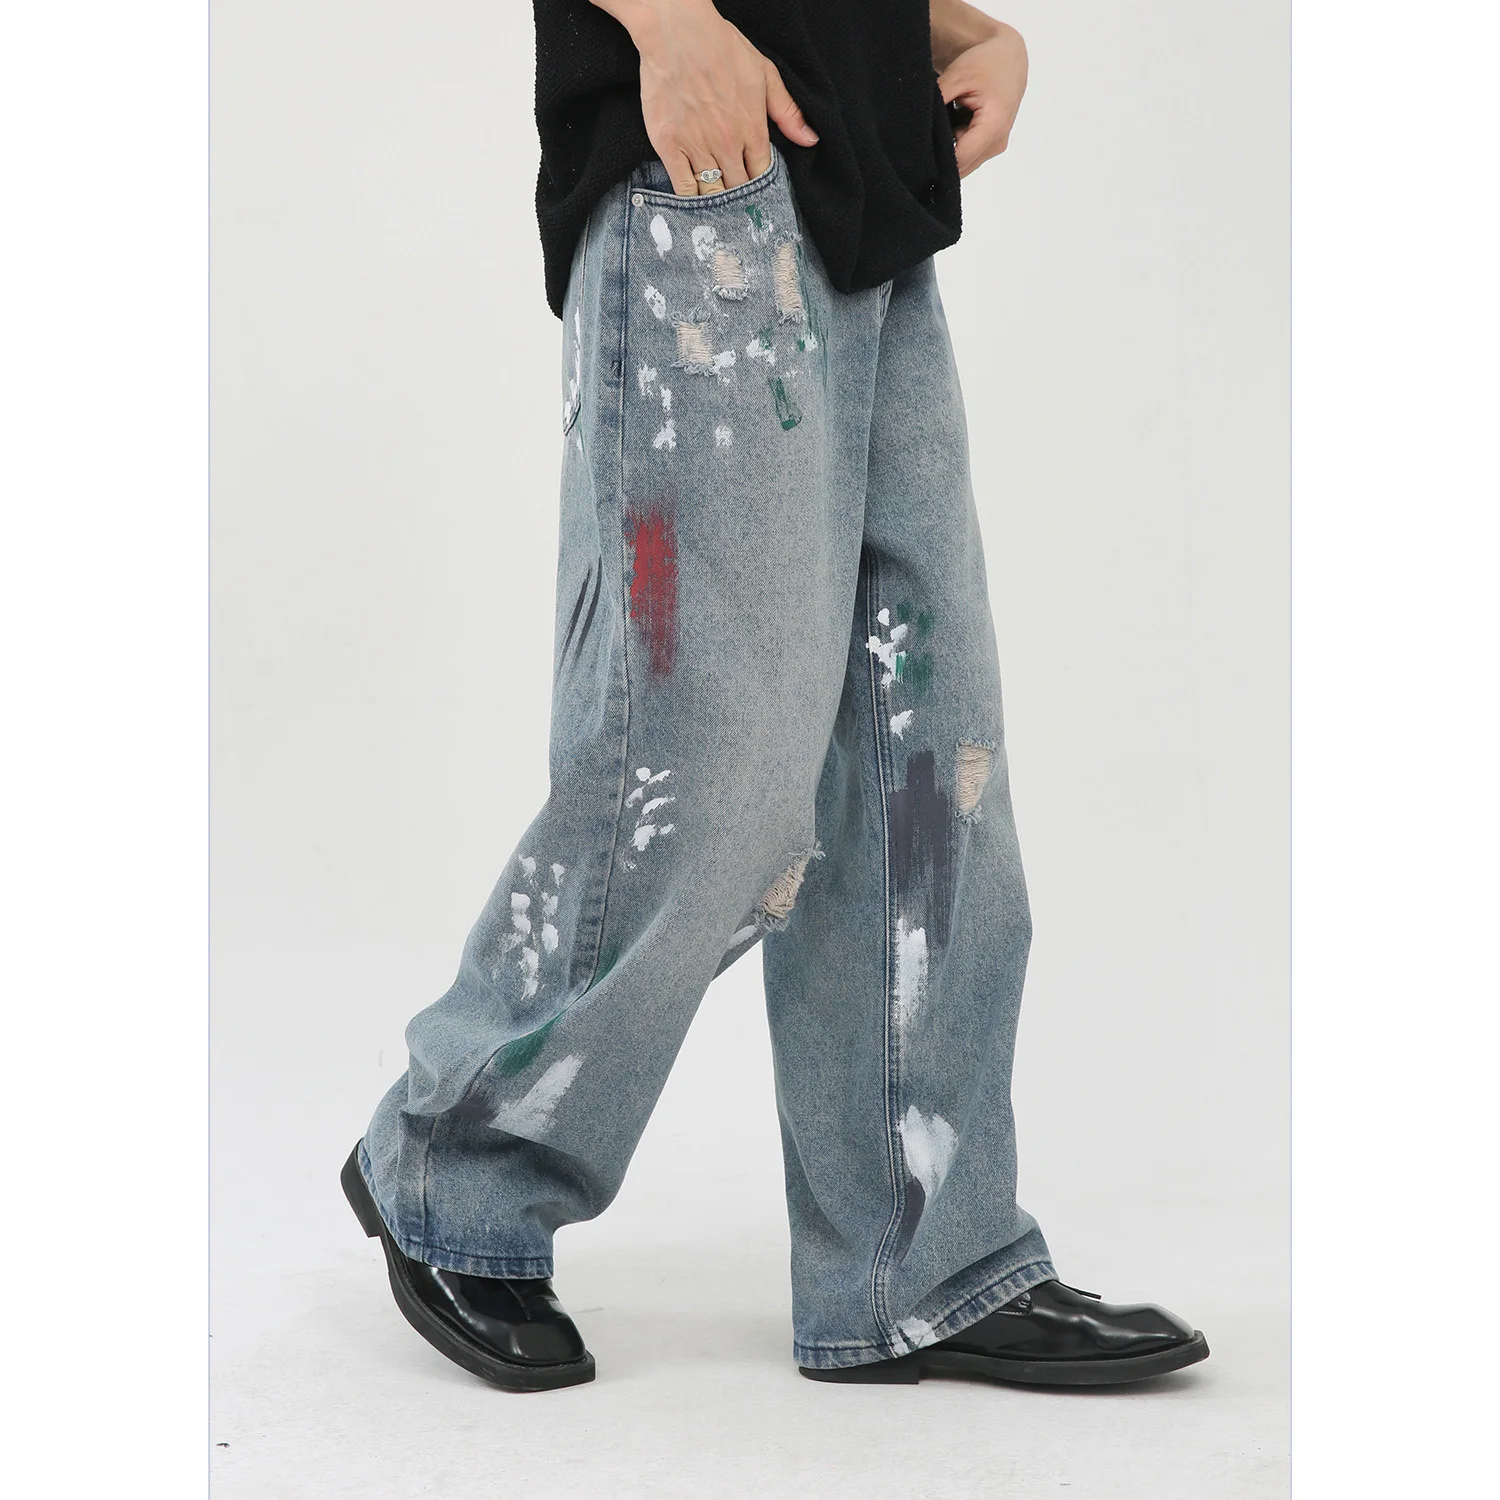 European Men's Plus Size Jeans Slimming Hole Patch Color Ink Dots Men's Jeans Street Hip Casual Denim Pants - Buy Hip-hop Casual Pants,Men's Biker Jeans Ripped Skinny,Plus Size